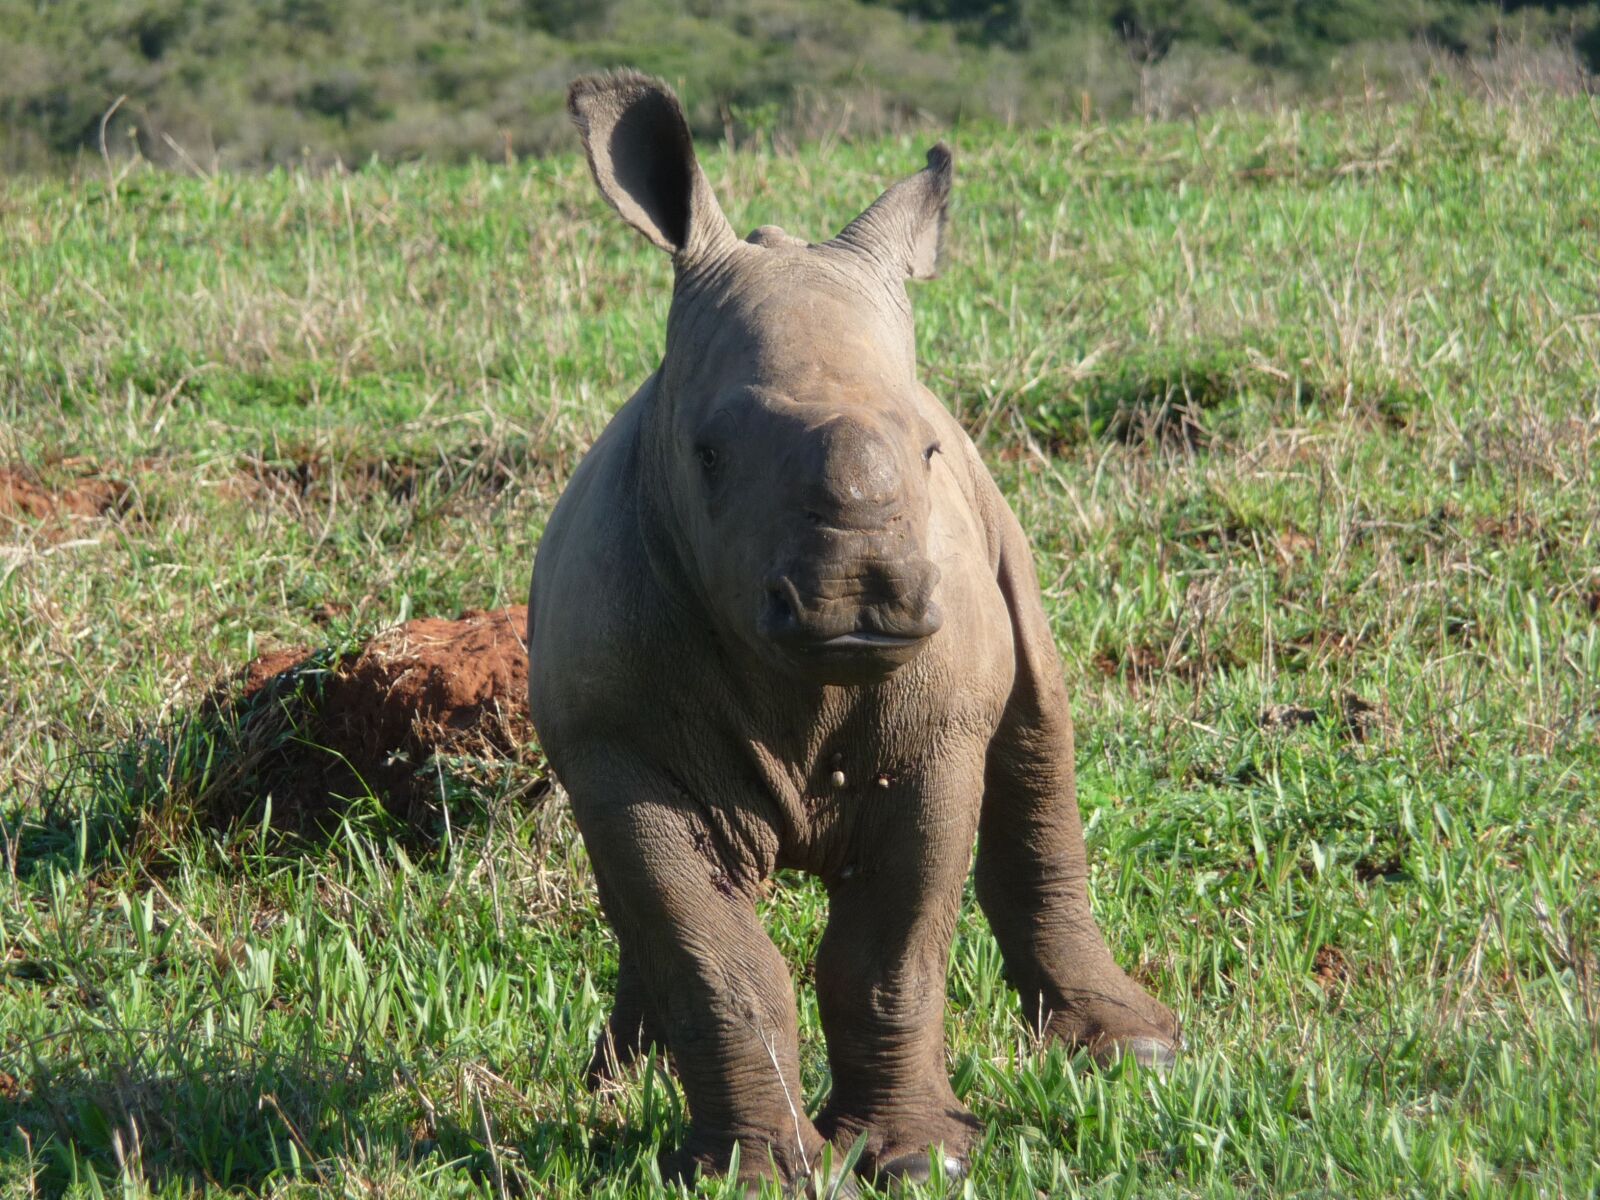 Panasonic Lumix DMC-TZ4 sample photo. Rhino, africa, wild photography